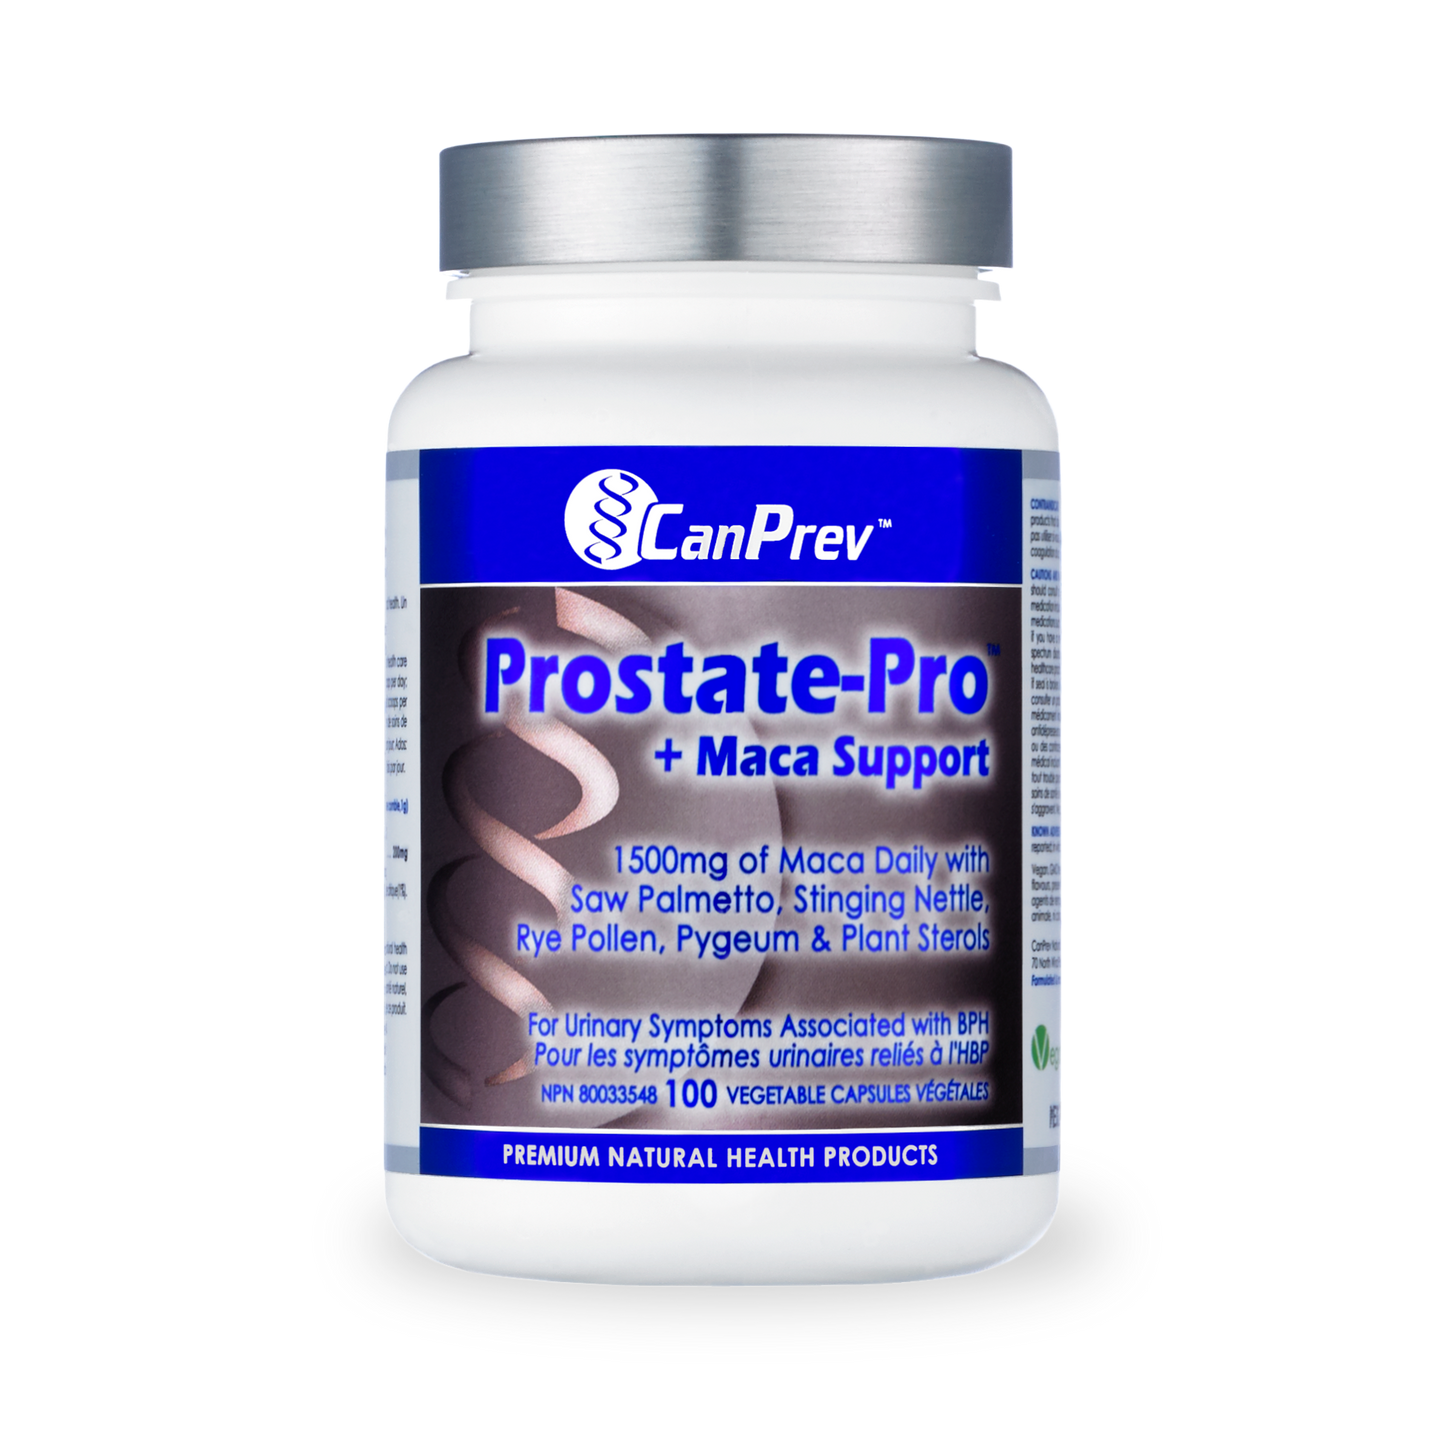 CanPrev Prostate-Pro